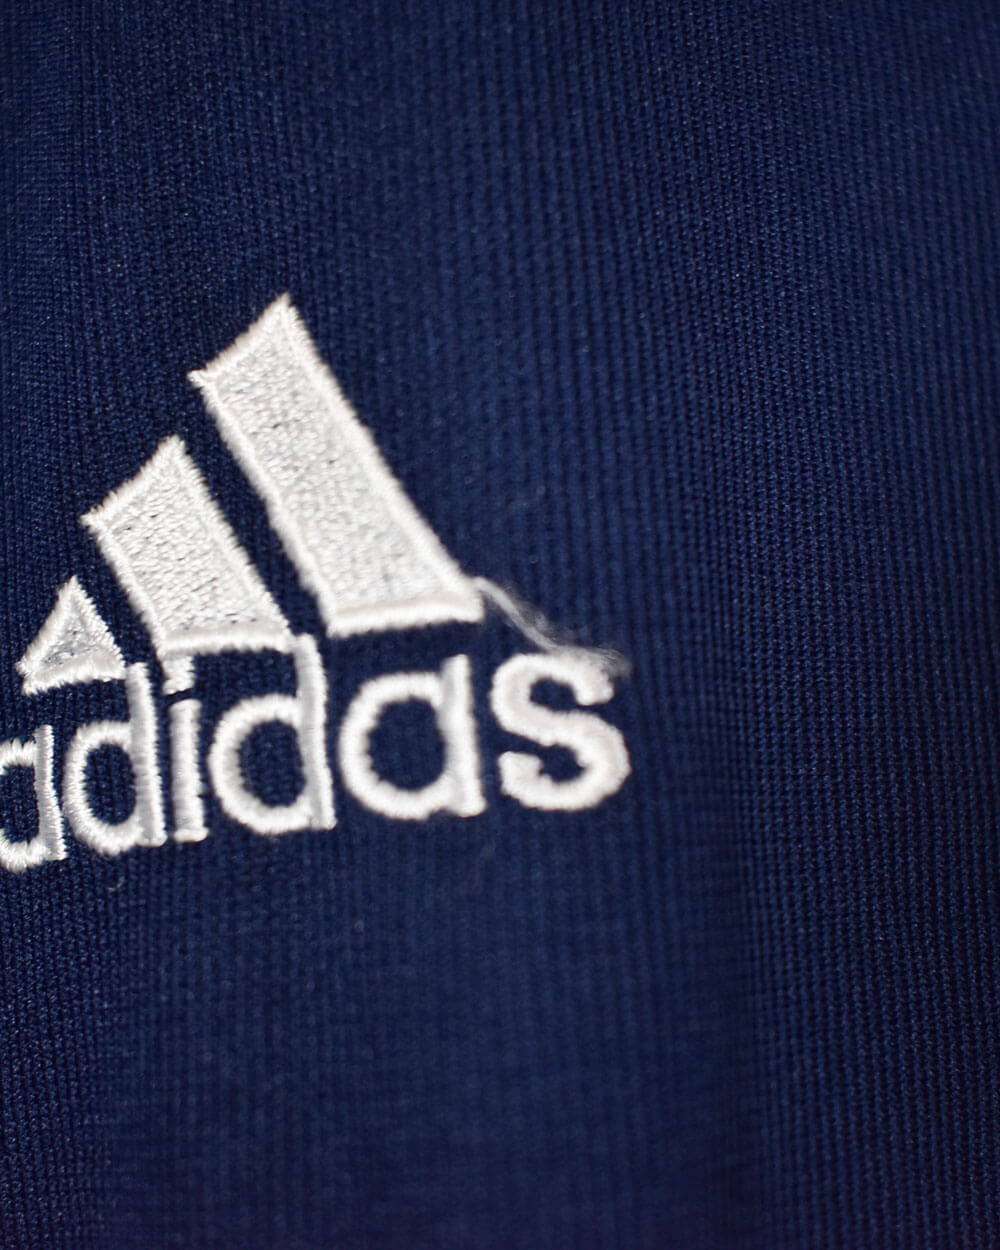 Navy Adidas Argentina 2001/02 Away Football Shirt - Medium